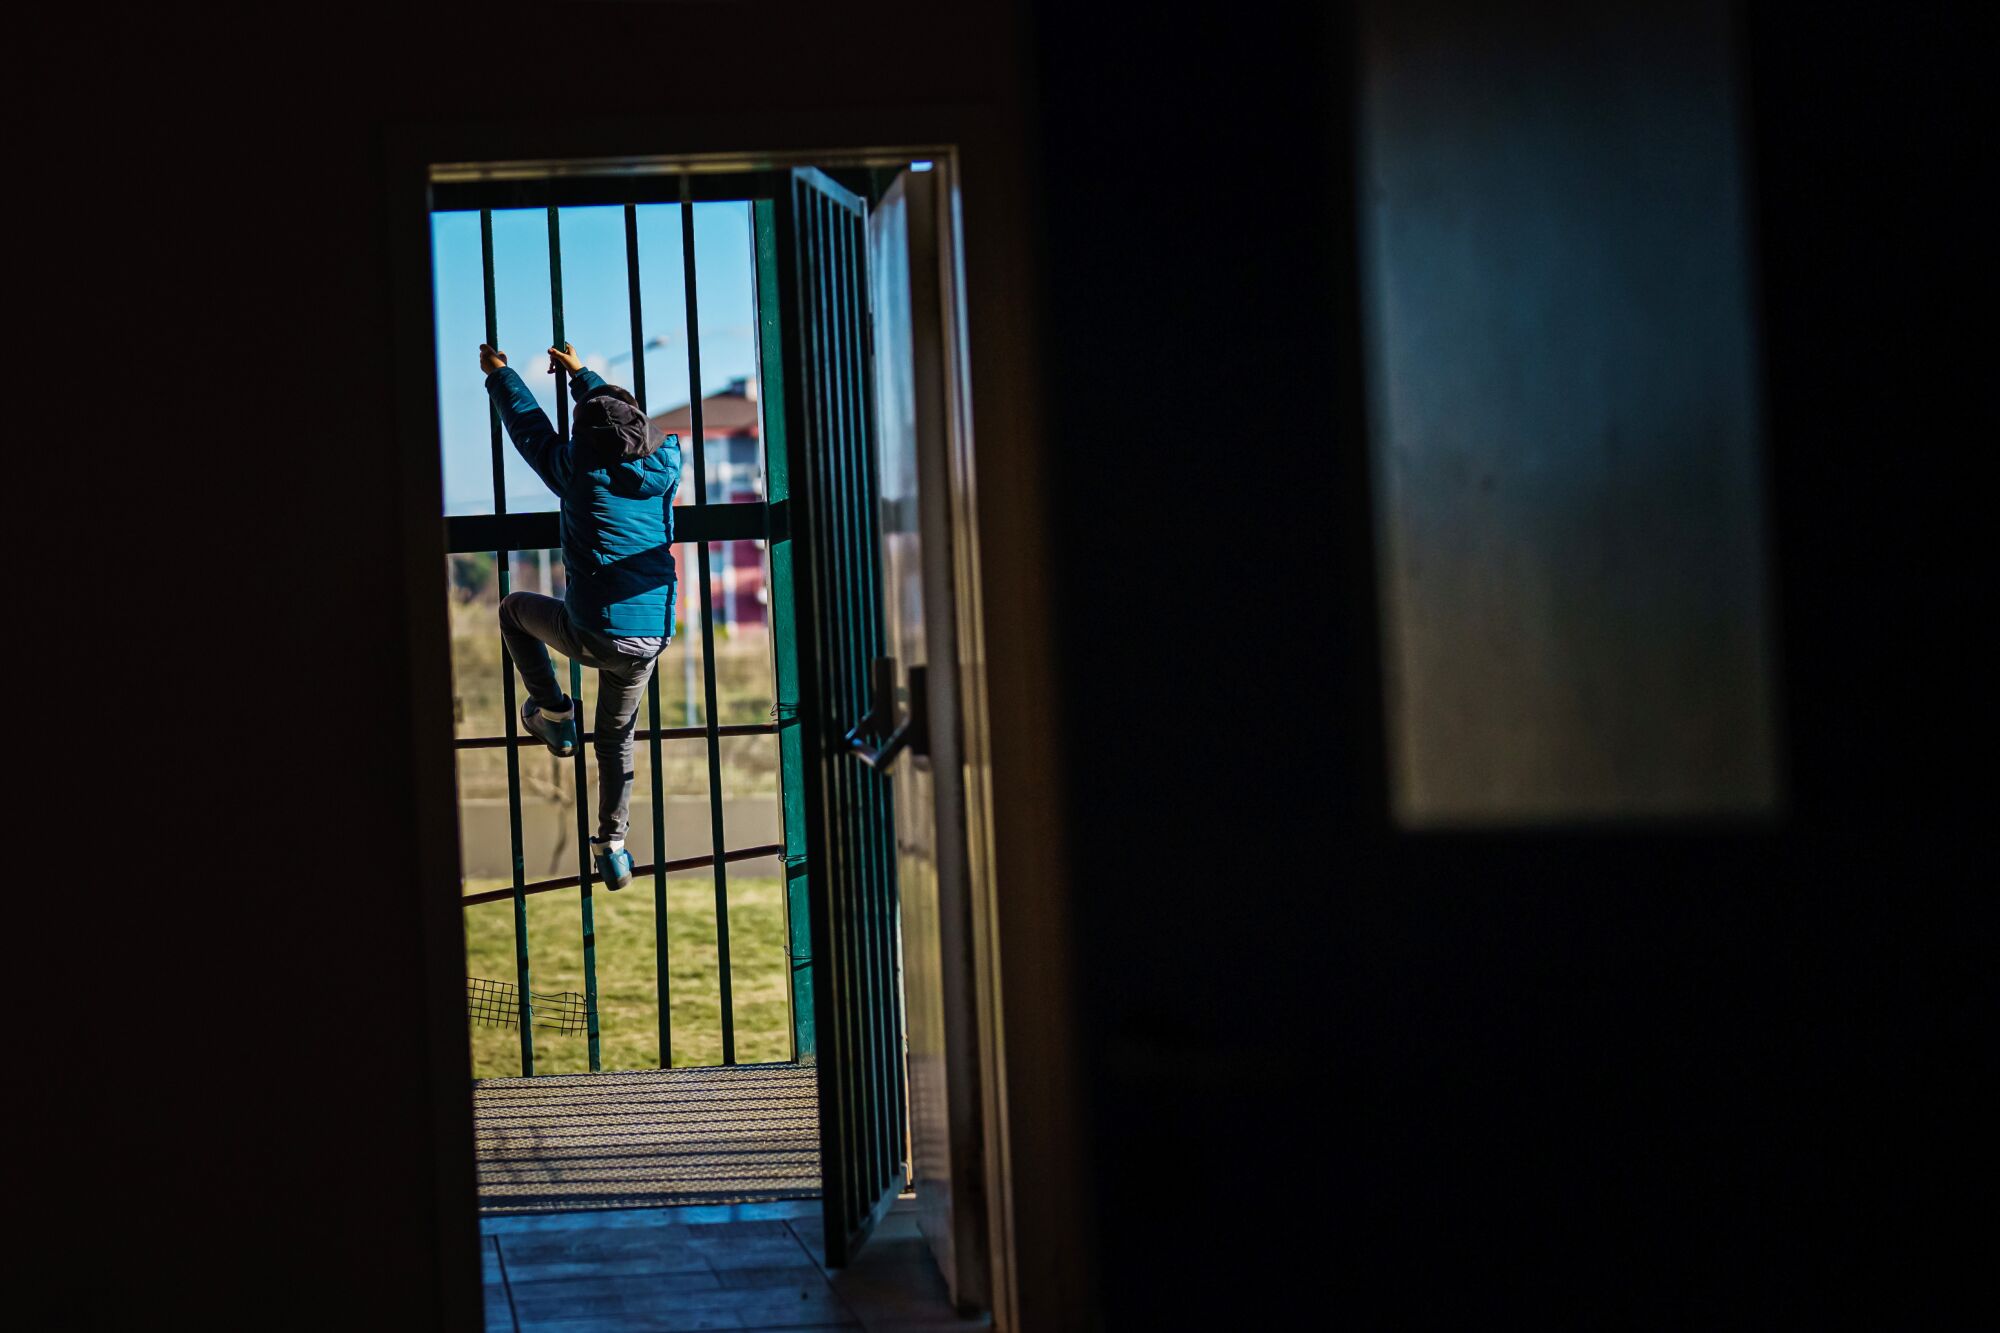 Seen through an open door, a child climbs a tall metal fence.